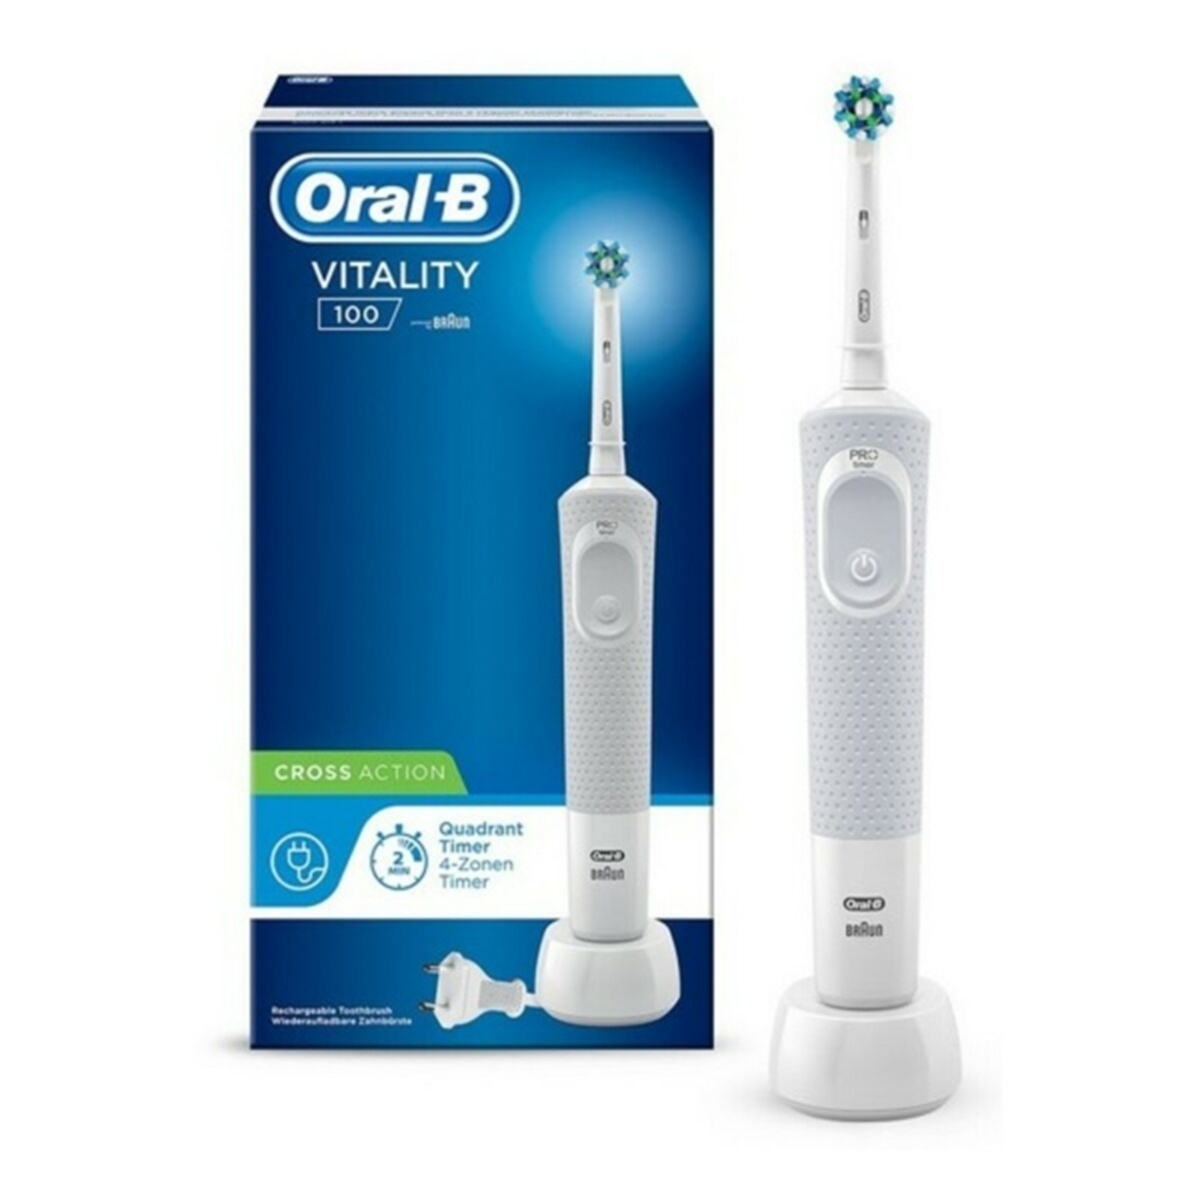 DOTMALL S7817762 Elektrische Zahnbürste weiße